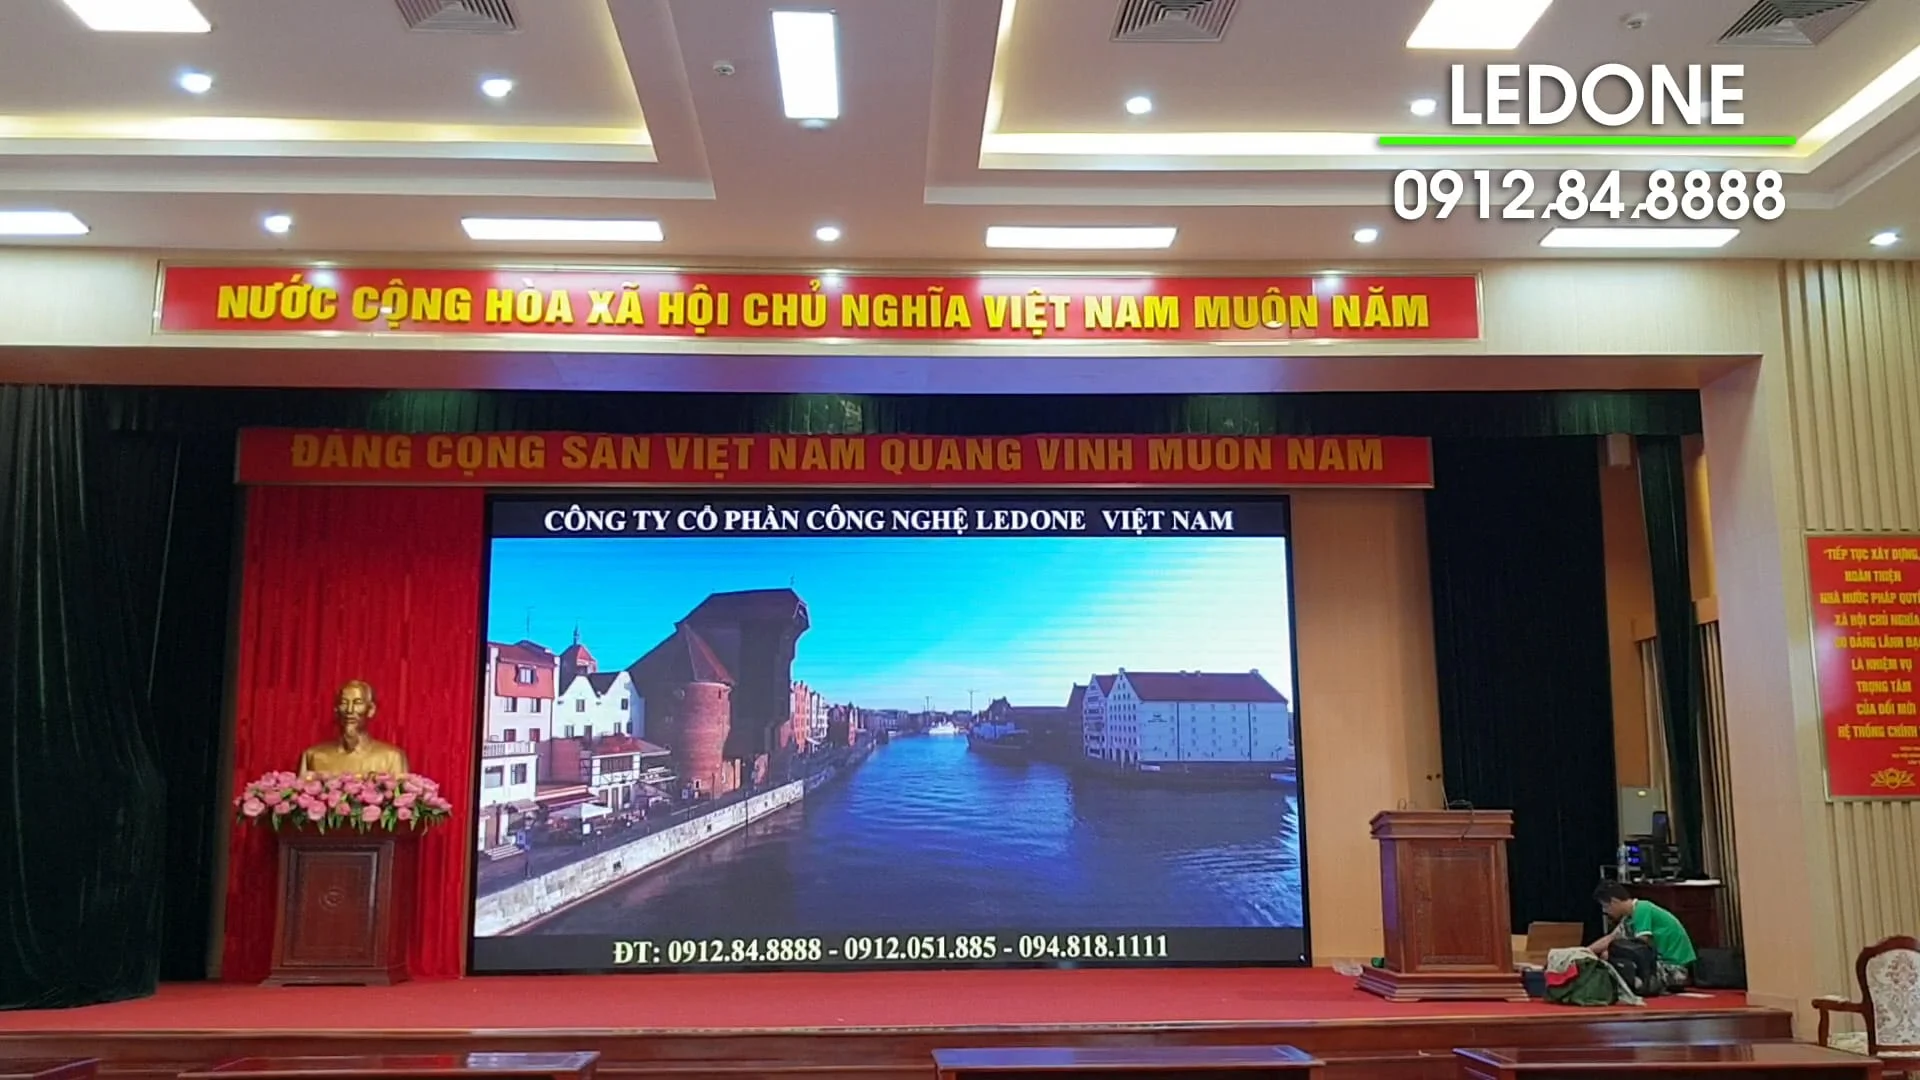 Thi công màn hình Led P4 tại Sài Gòn Palace - Cẩm Phả - 11.900.000 VNĐ/m2  